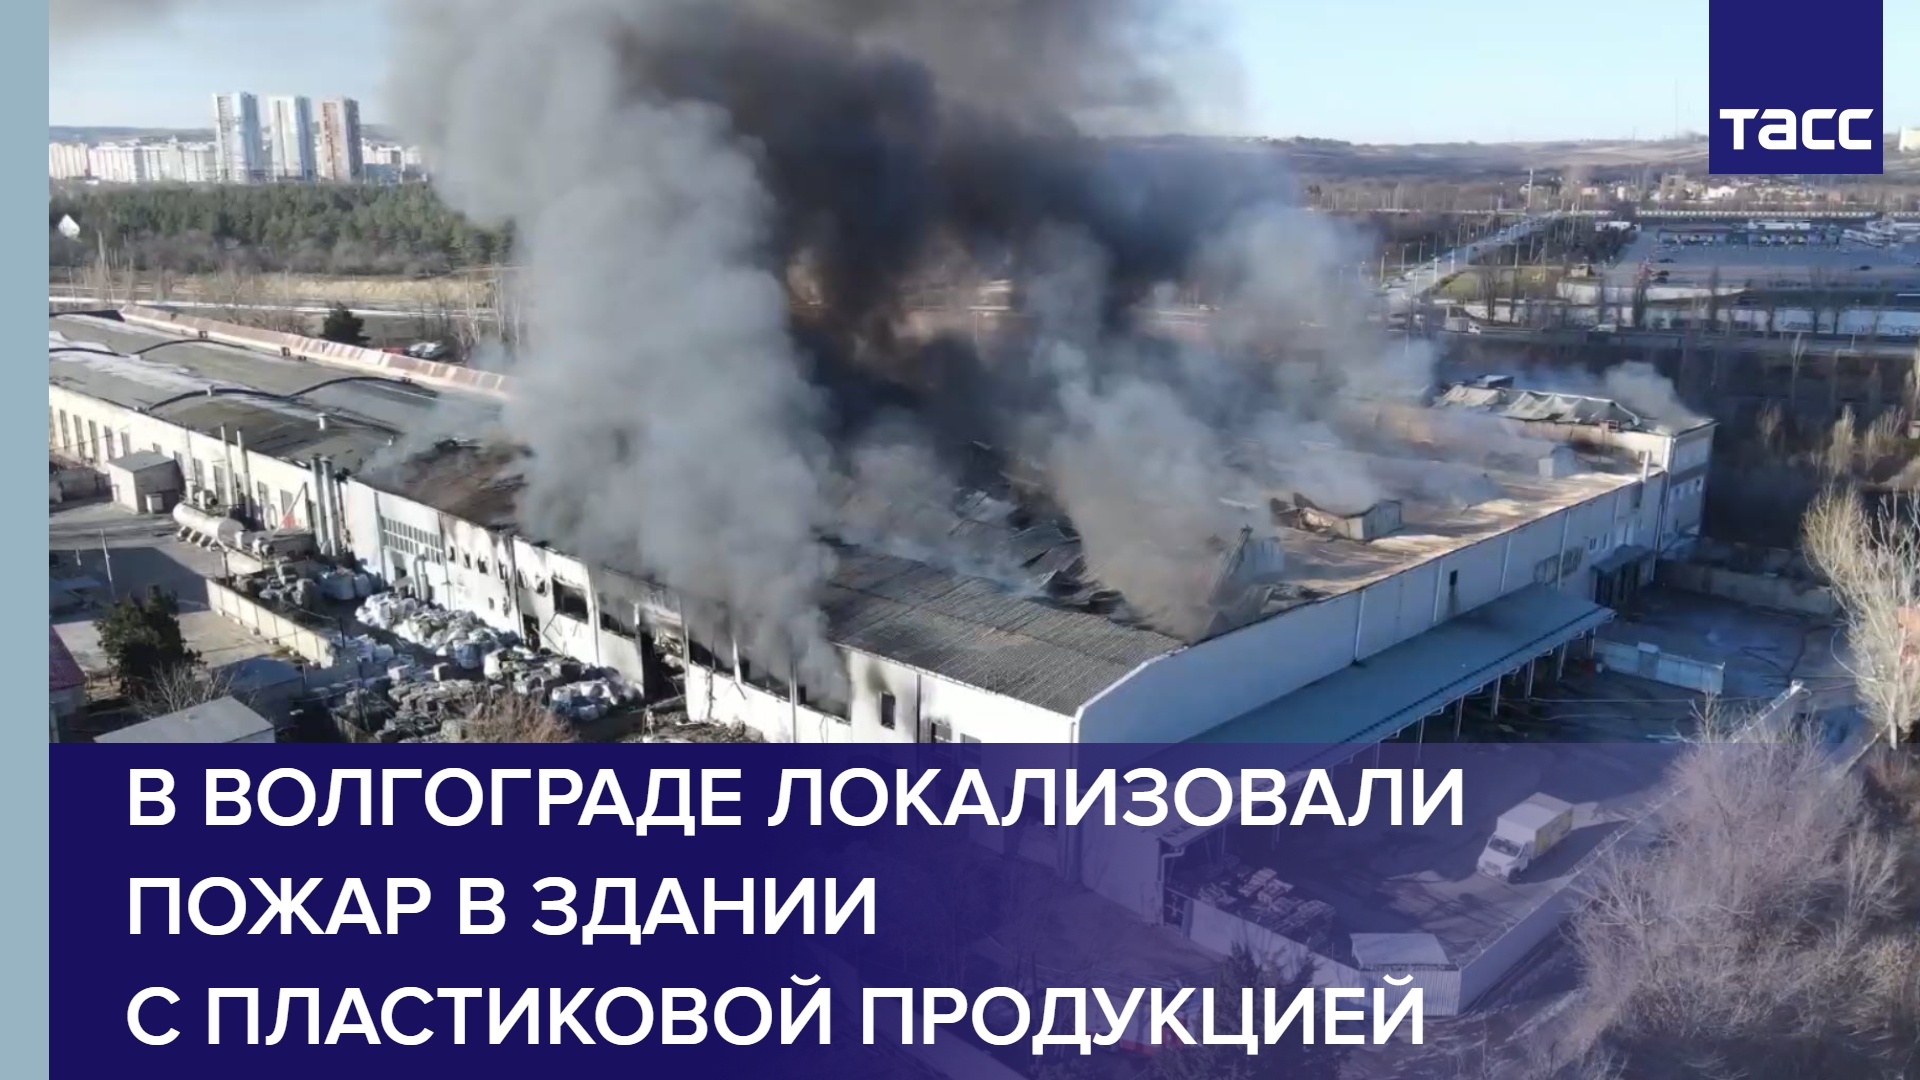 В Волгограде локализовали пожар в здании с пластиковой продукцией #shorts